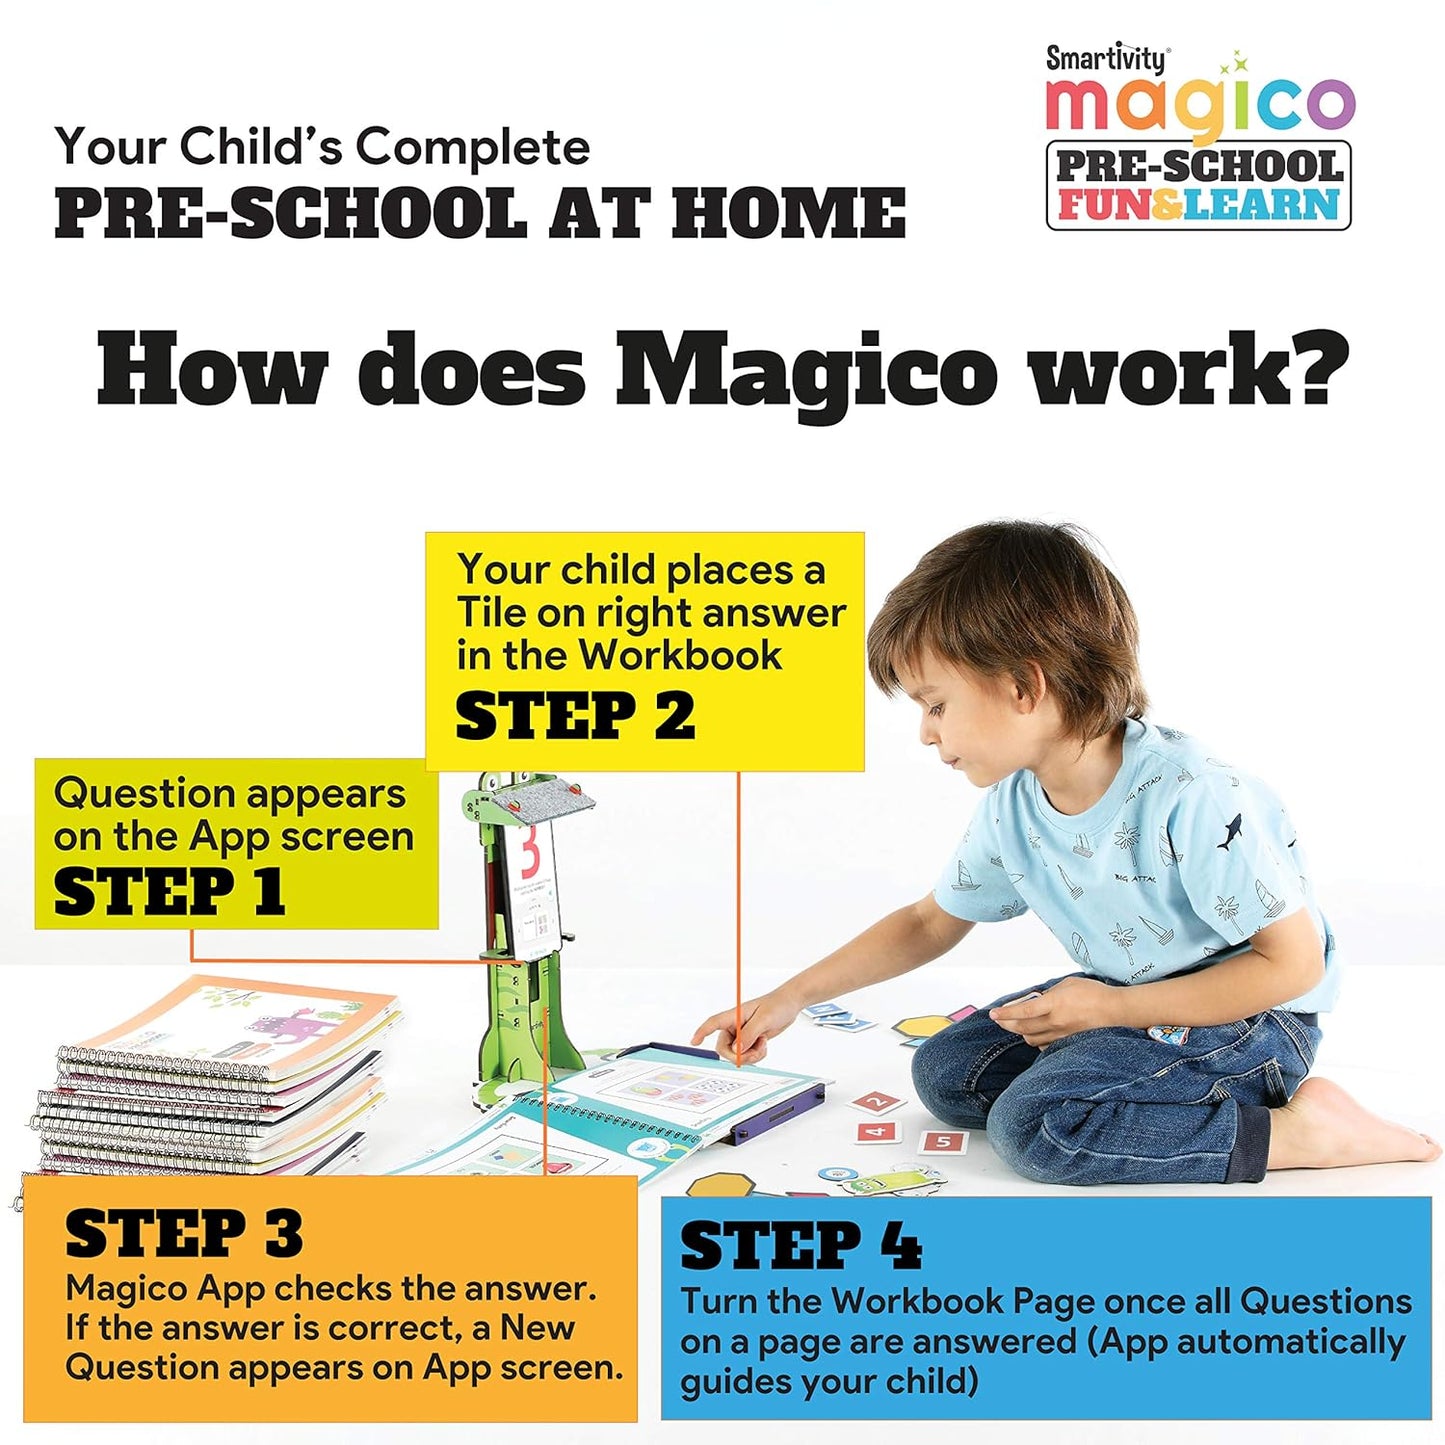 Smartivity Magico Preschool Fun & Learn 知識掃描器